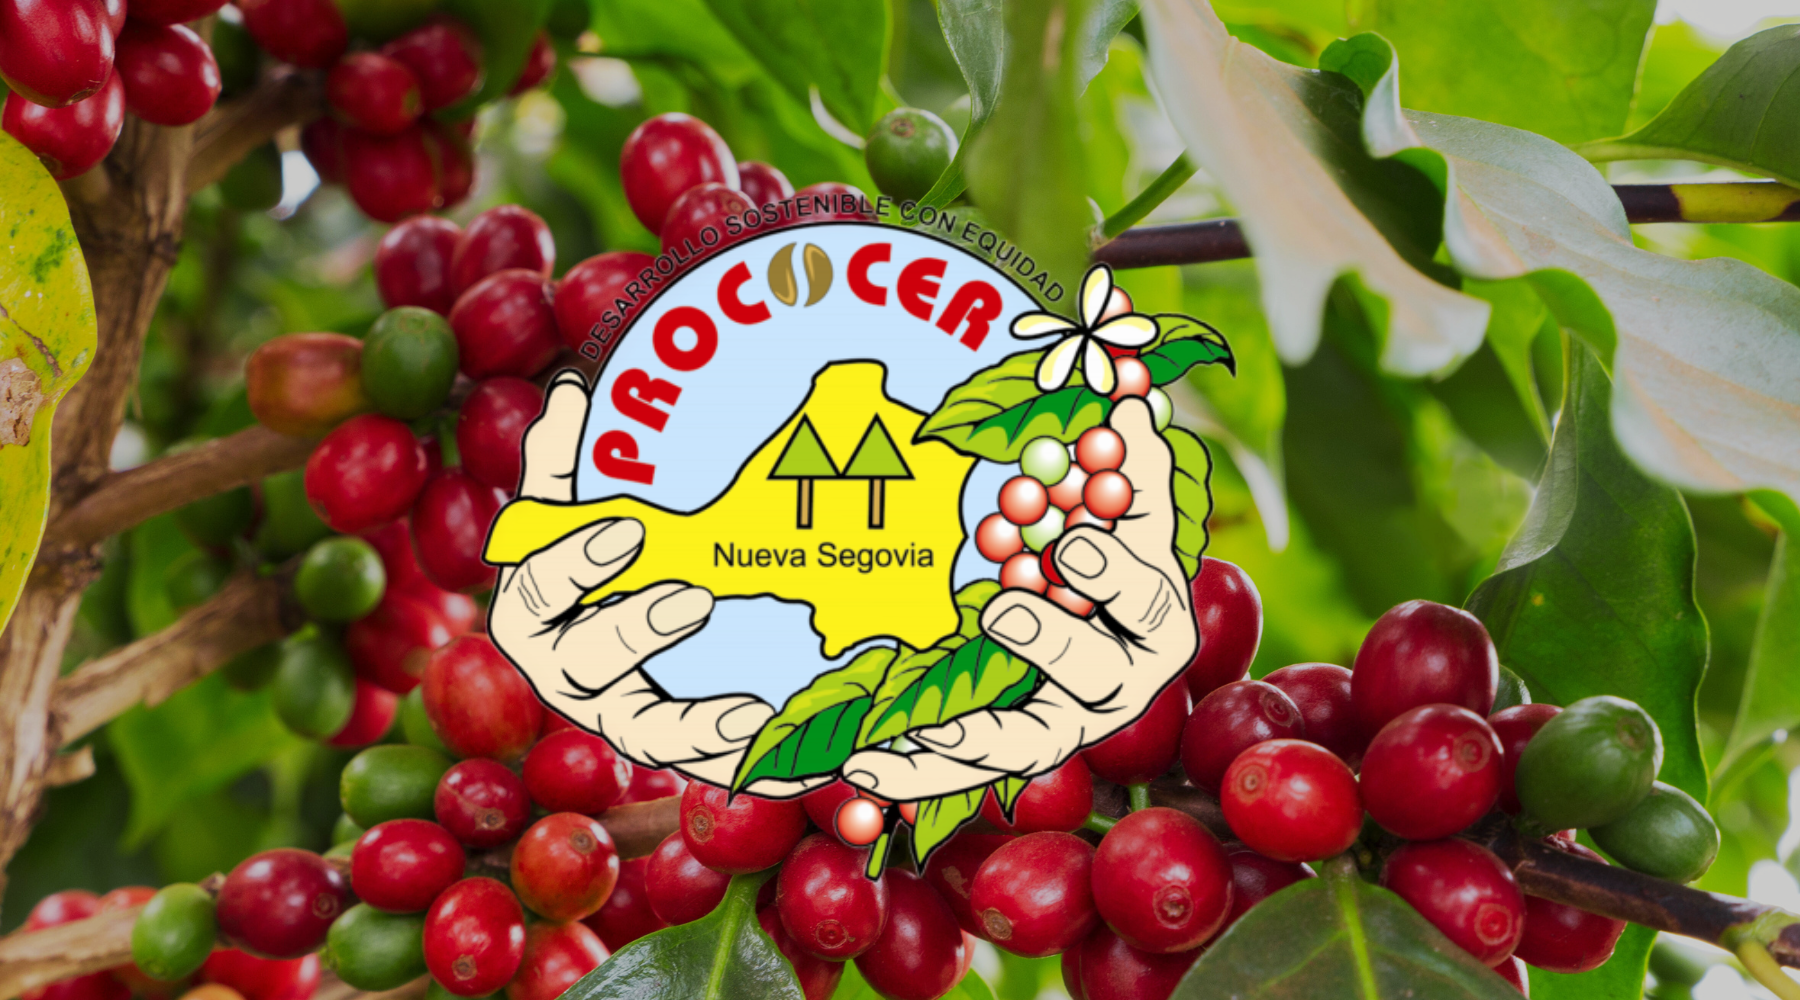 Prococer coop logo over coffee cherries